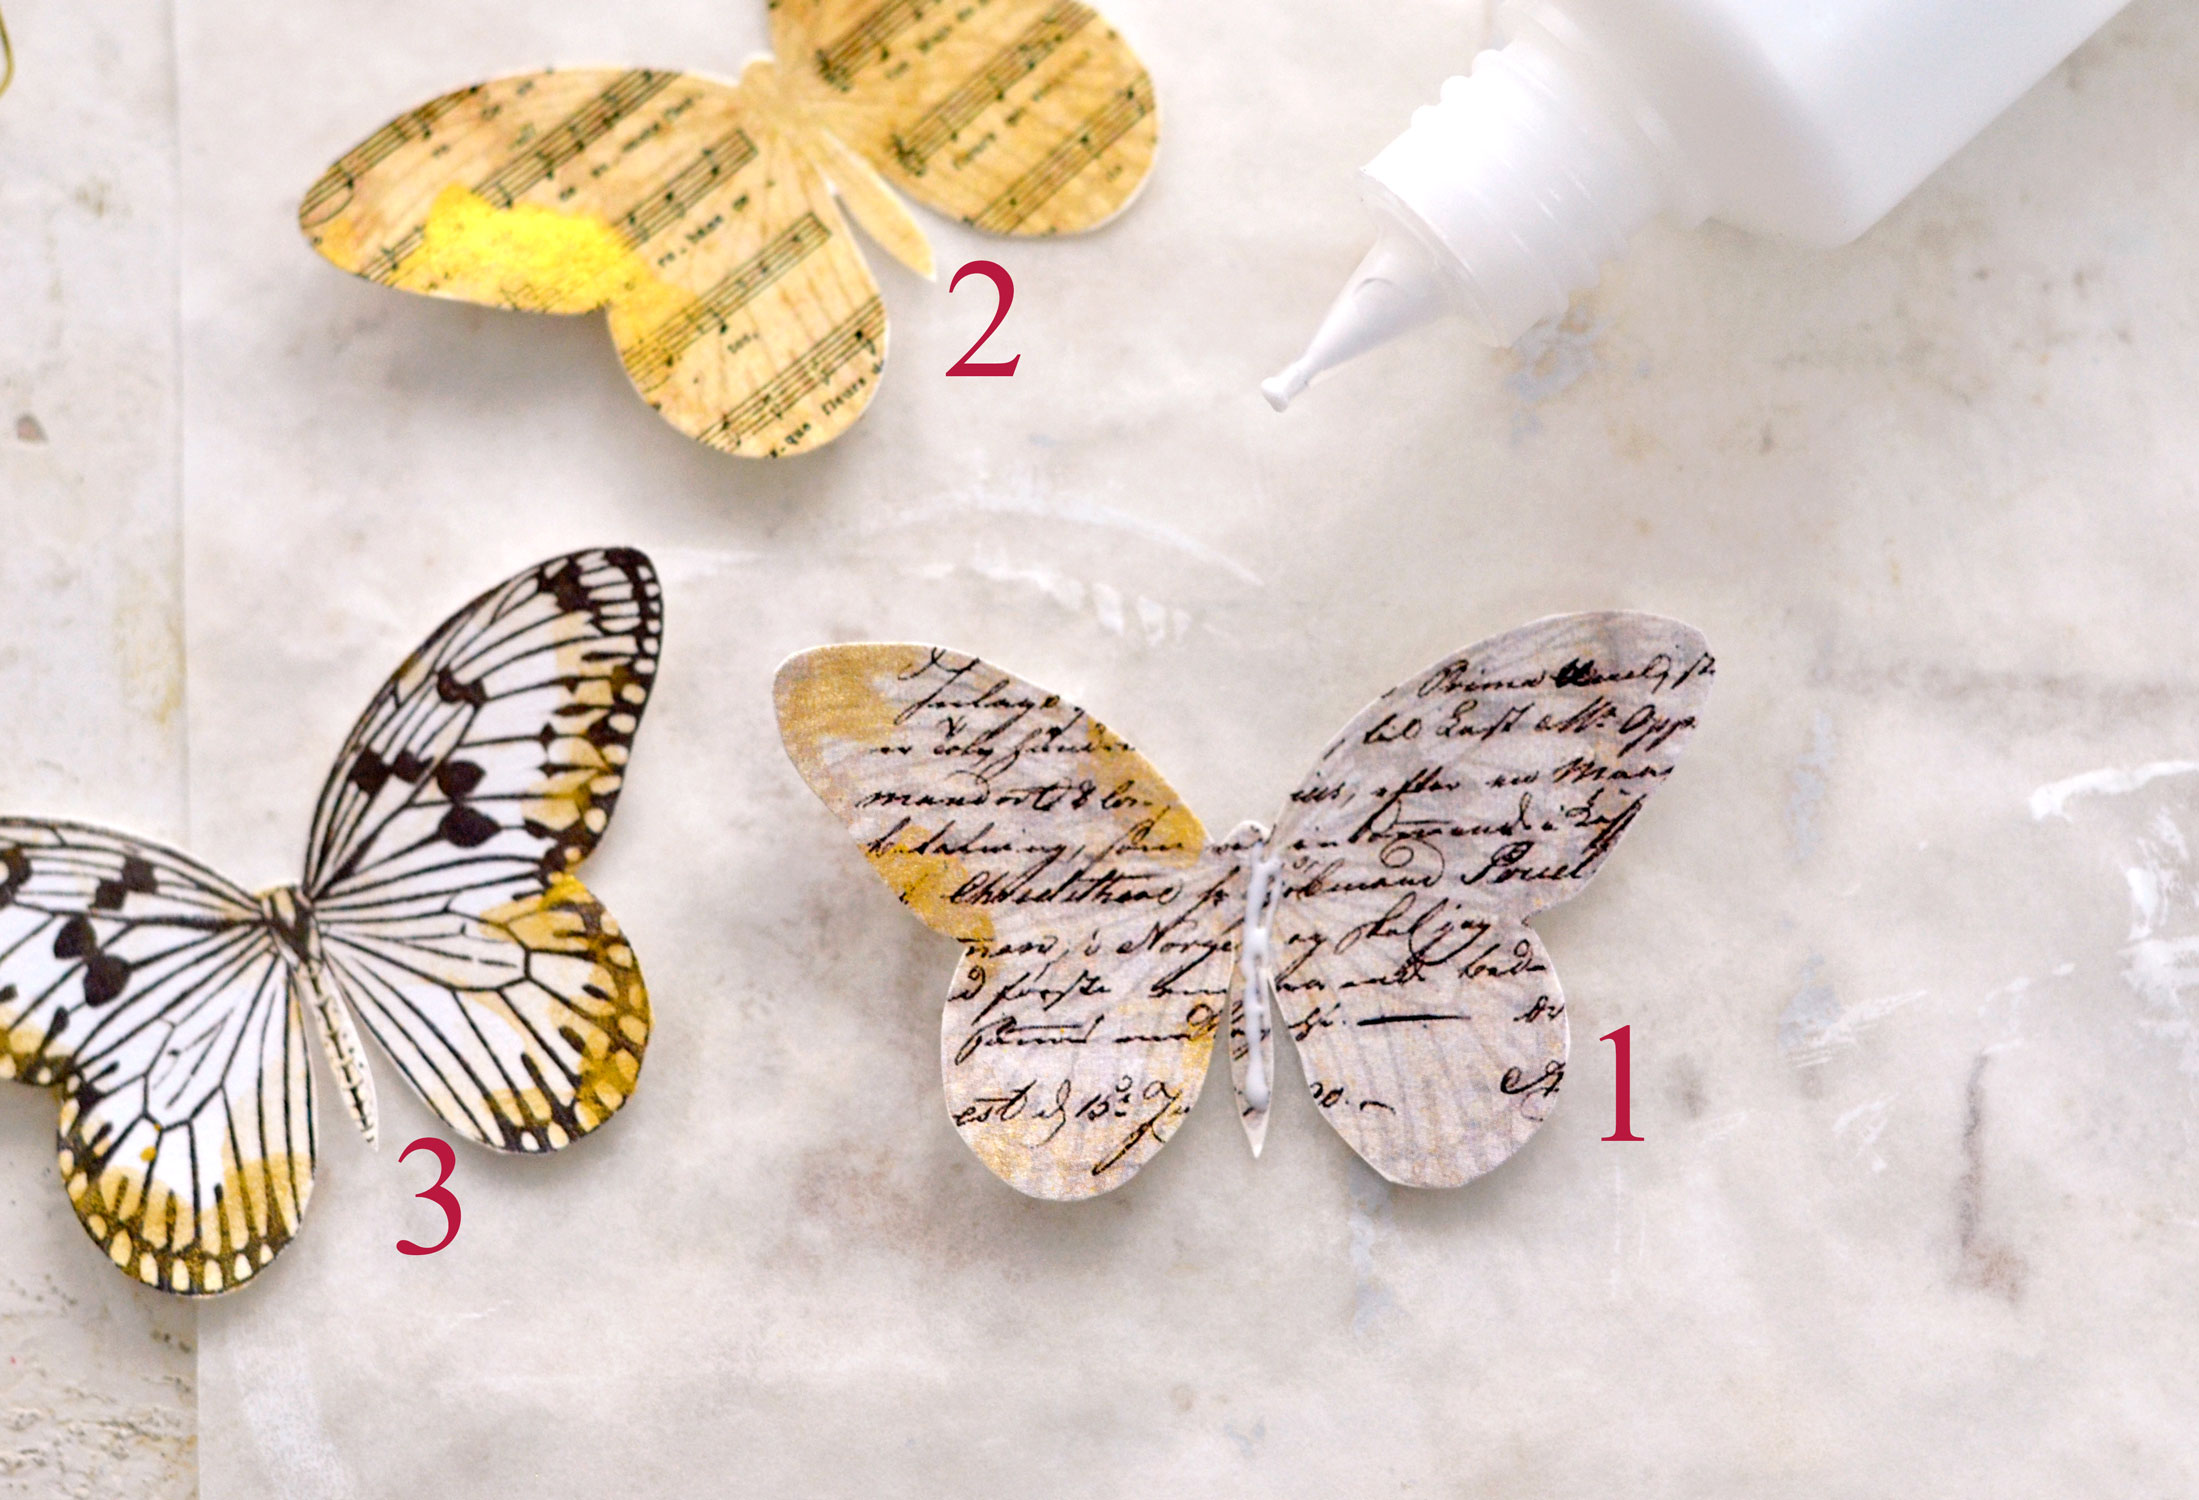 assembling the 3D butterflies